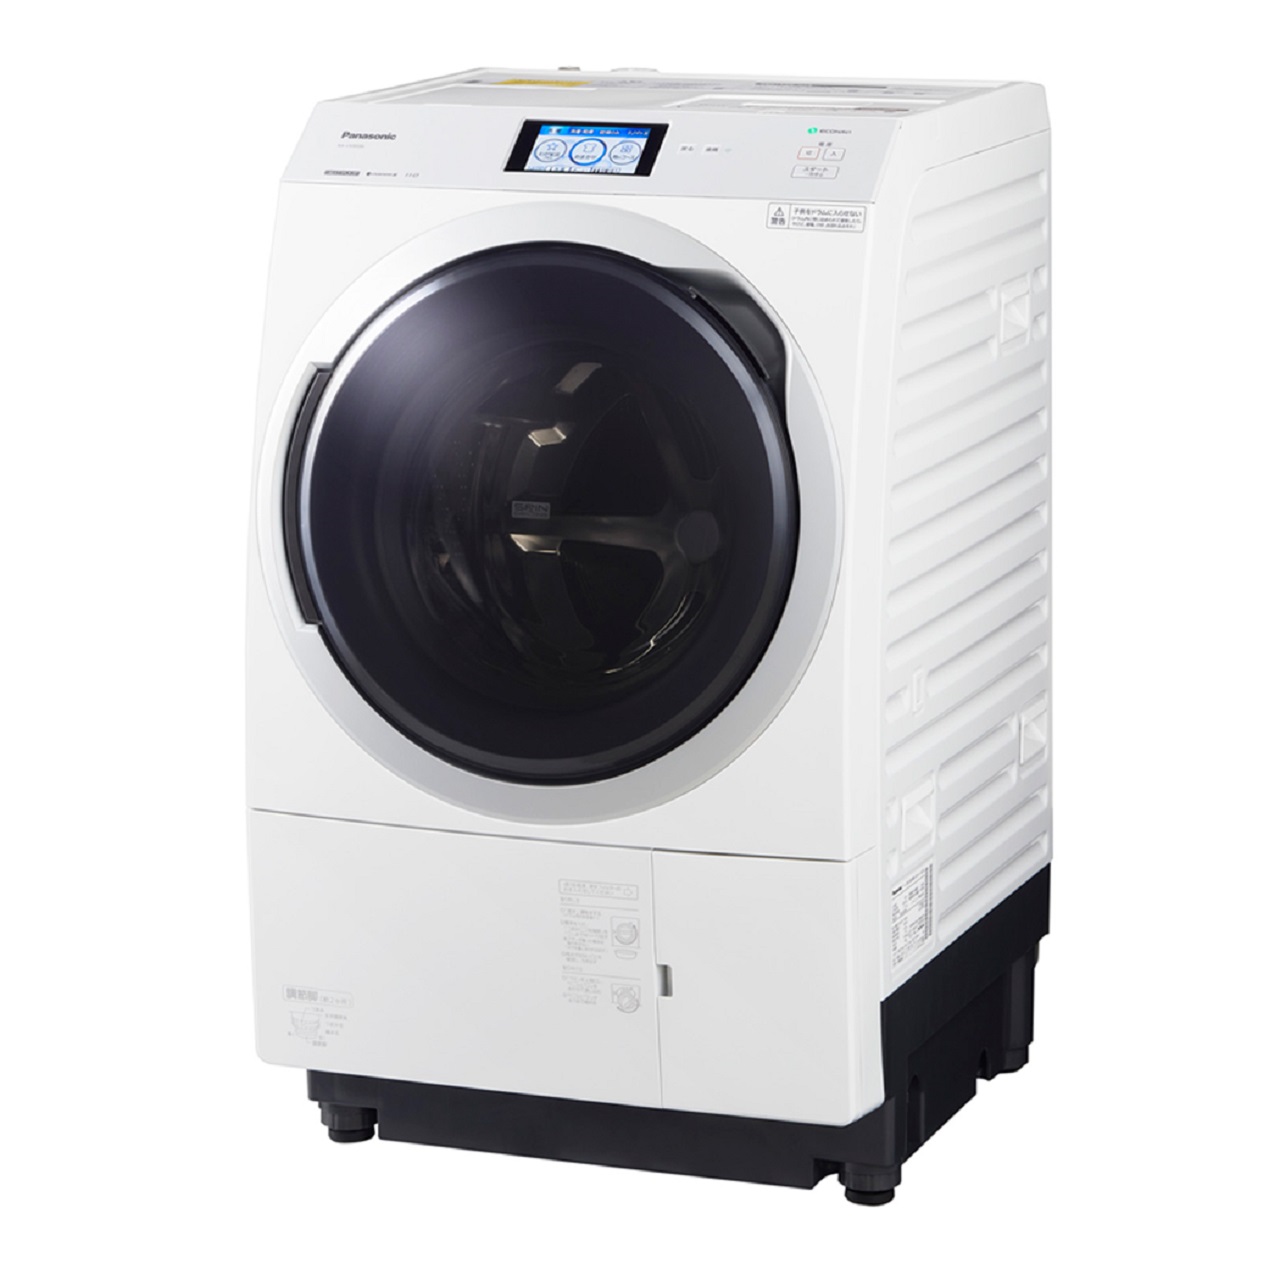 パナソニックNA-VX900Bななめドラム洗濯乾燥機